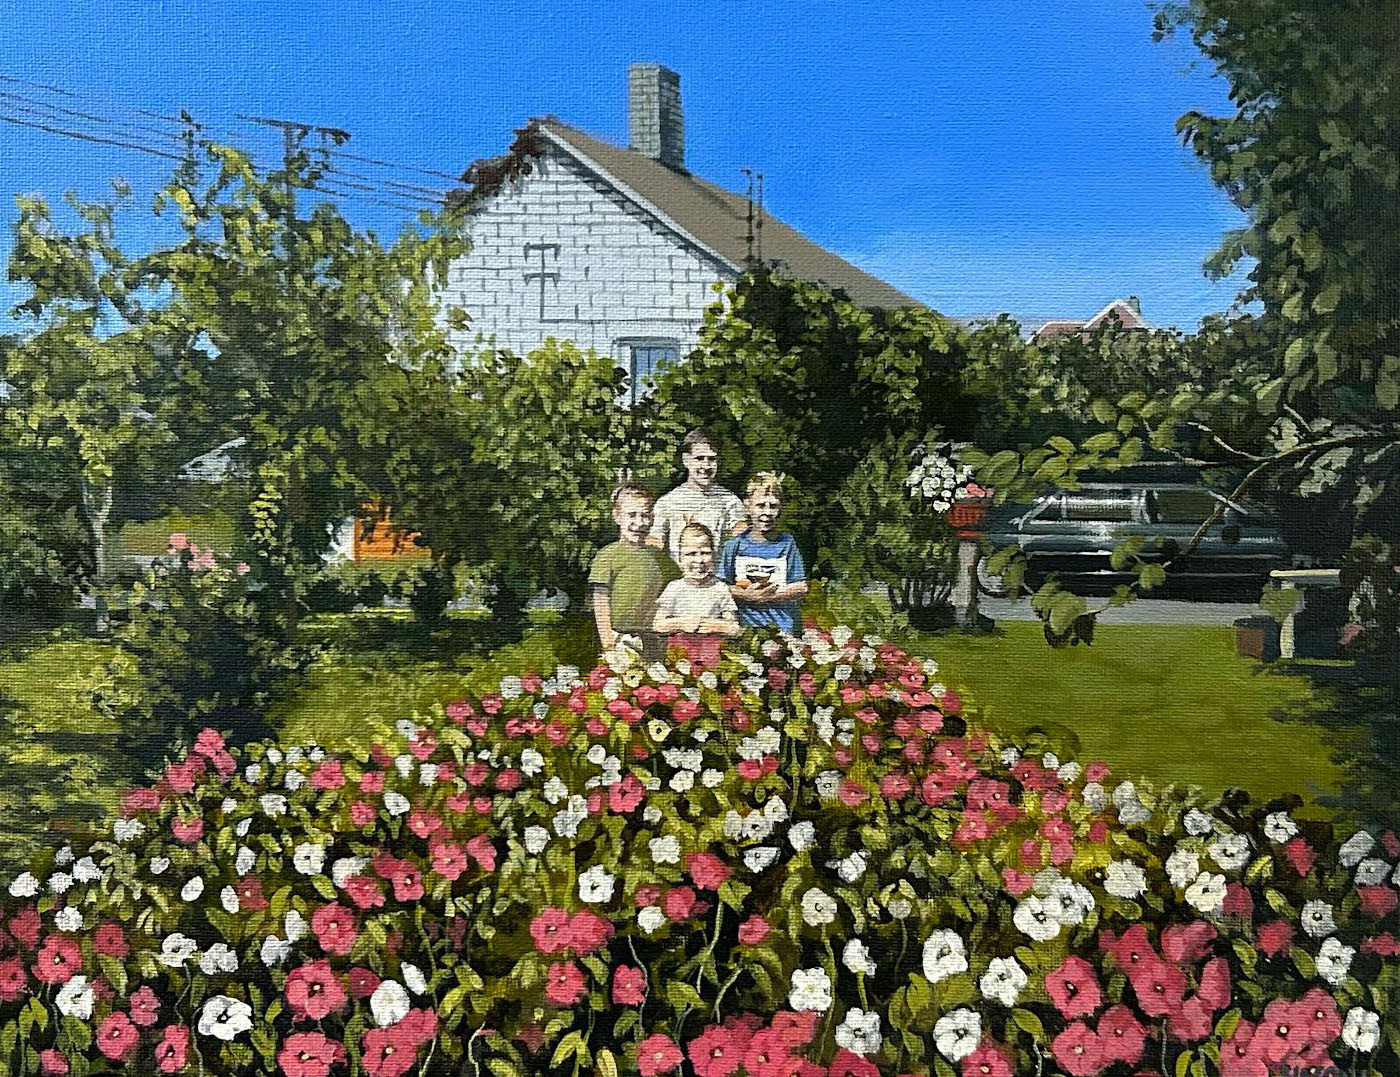 painting   pleinair acrylic painting Landscape portrait house Flowers family portrait pleinairpainting